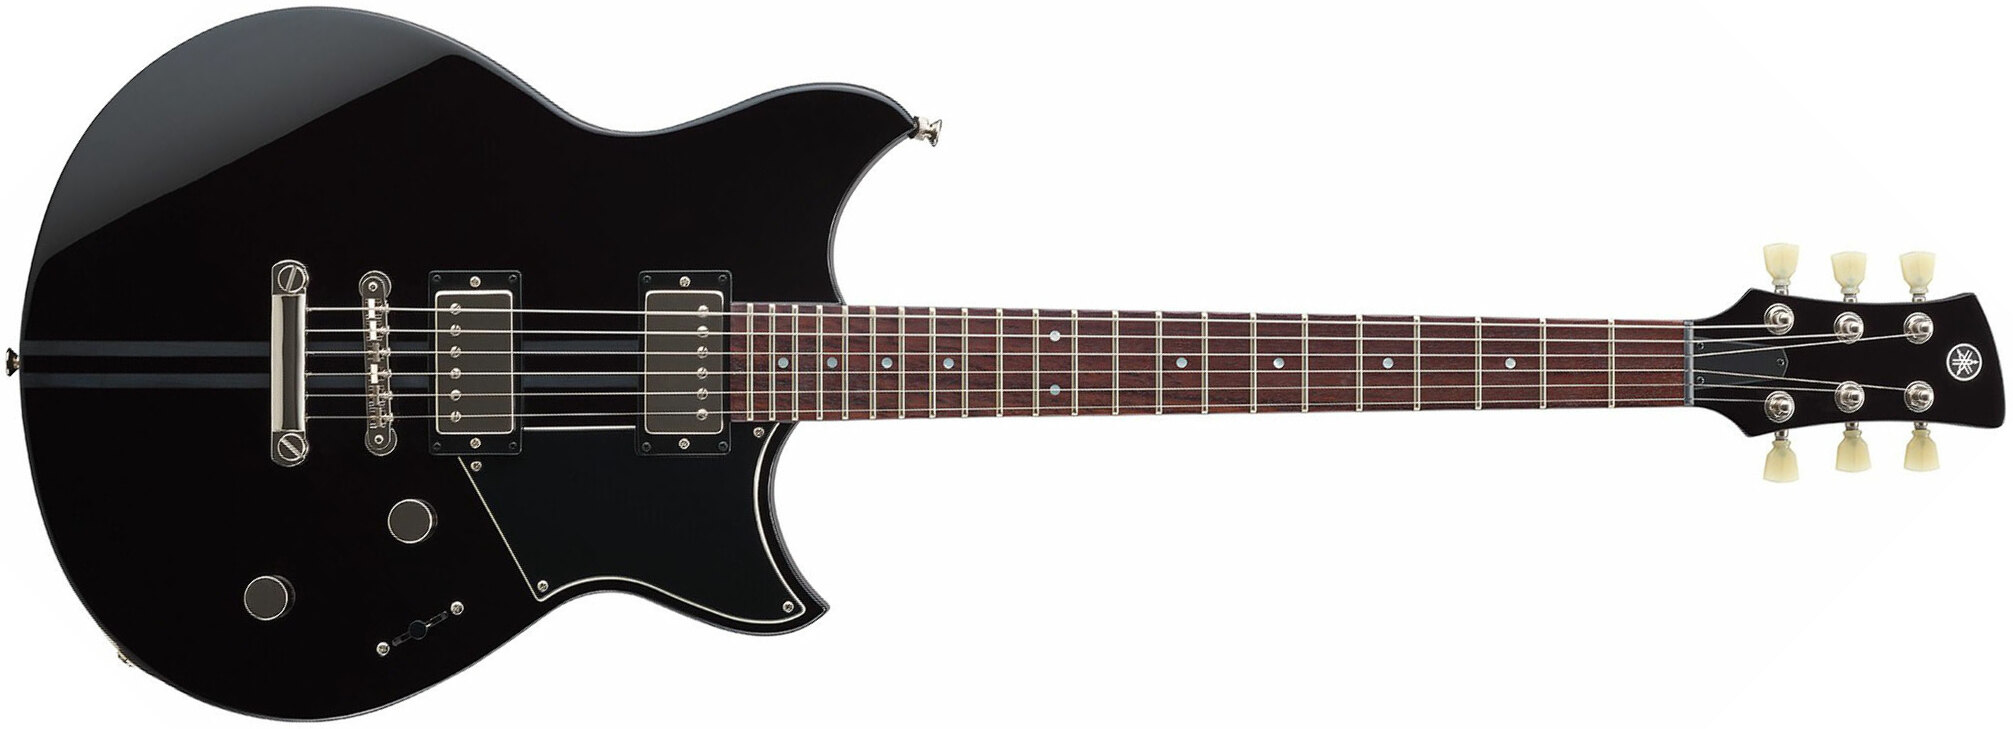 Yamaha Rse20 Revstar Element Hh Ht Rw - Black - Guitarra eléctrica de doble corte - Main picture